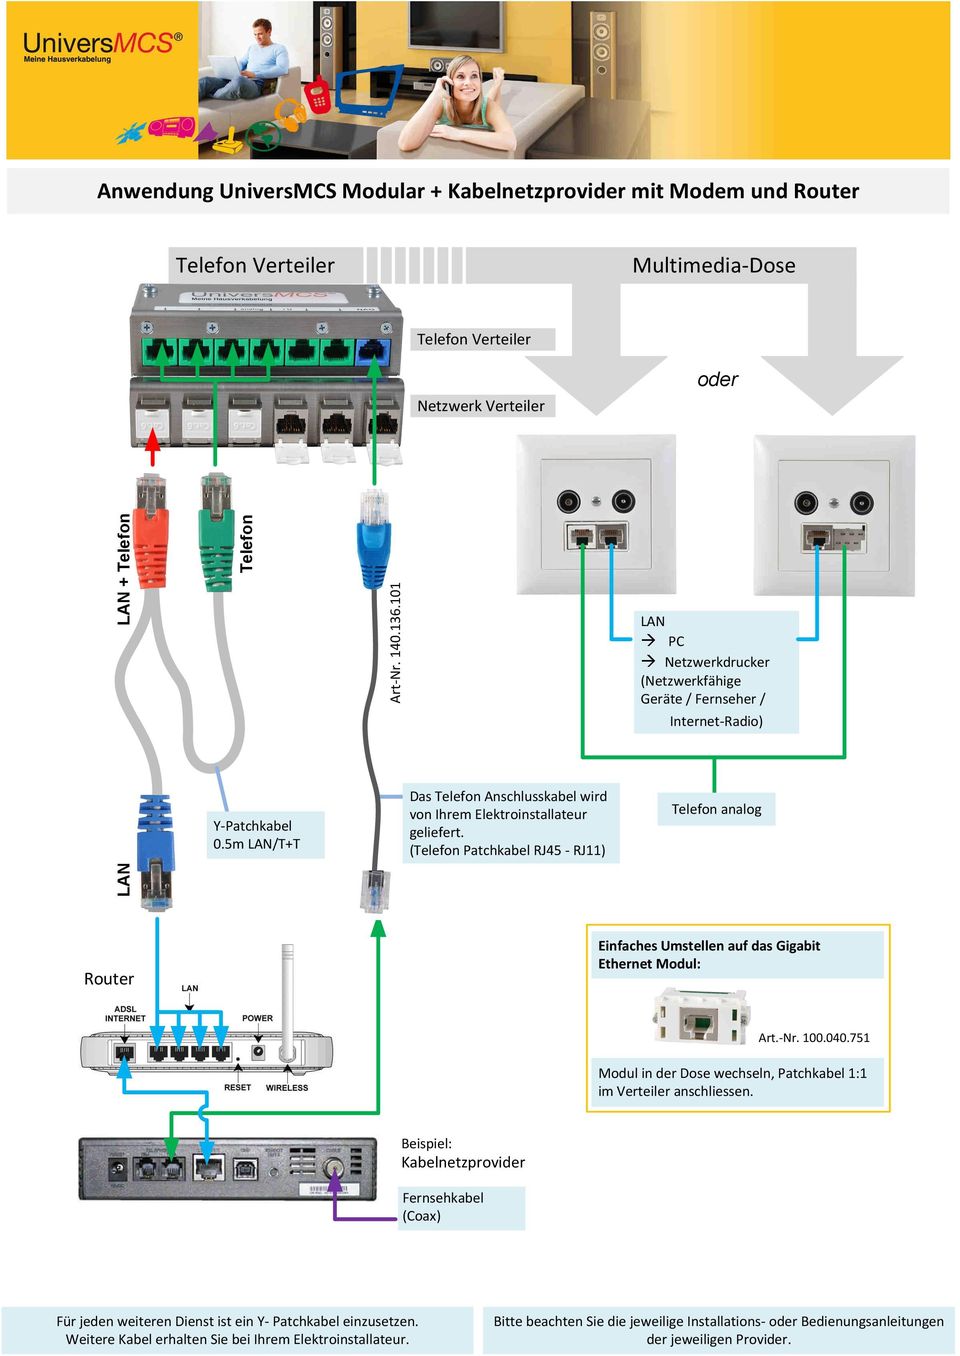 5m /T+T Das Anschlusskabel wird von Ihrem Elektroinstallateur (